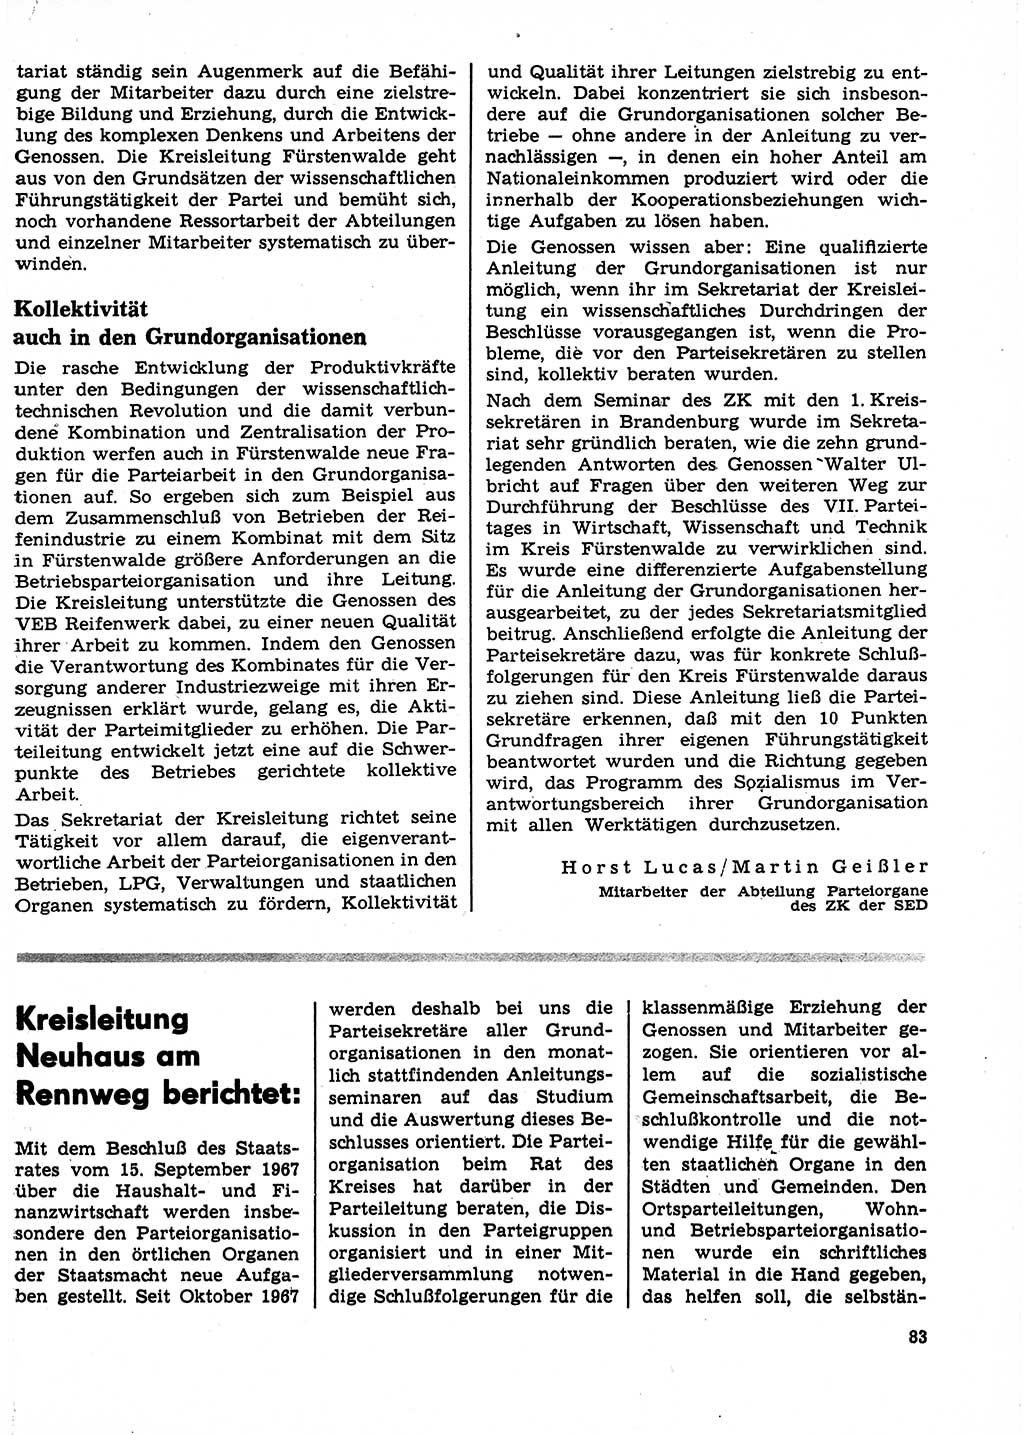 Neuer Weg (NW), Organ des Zentralkomitees (ZK) der SED (Sozialistische Einheitspartei Deutschlands) für Fragen des Parteilebens, 23. Jahrgang [Deutsche Demokratische Republik (DDR)] 1968, Seite 83 (NW ZK SED DDR 1968, S. 83)